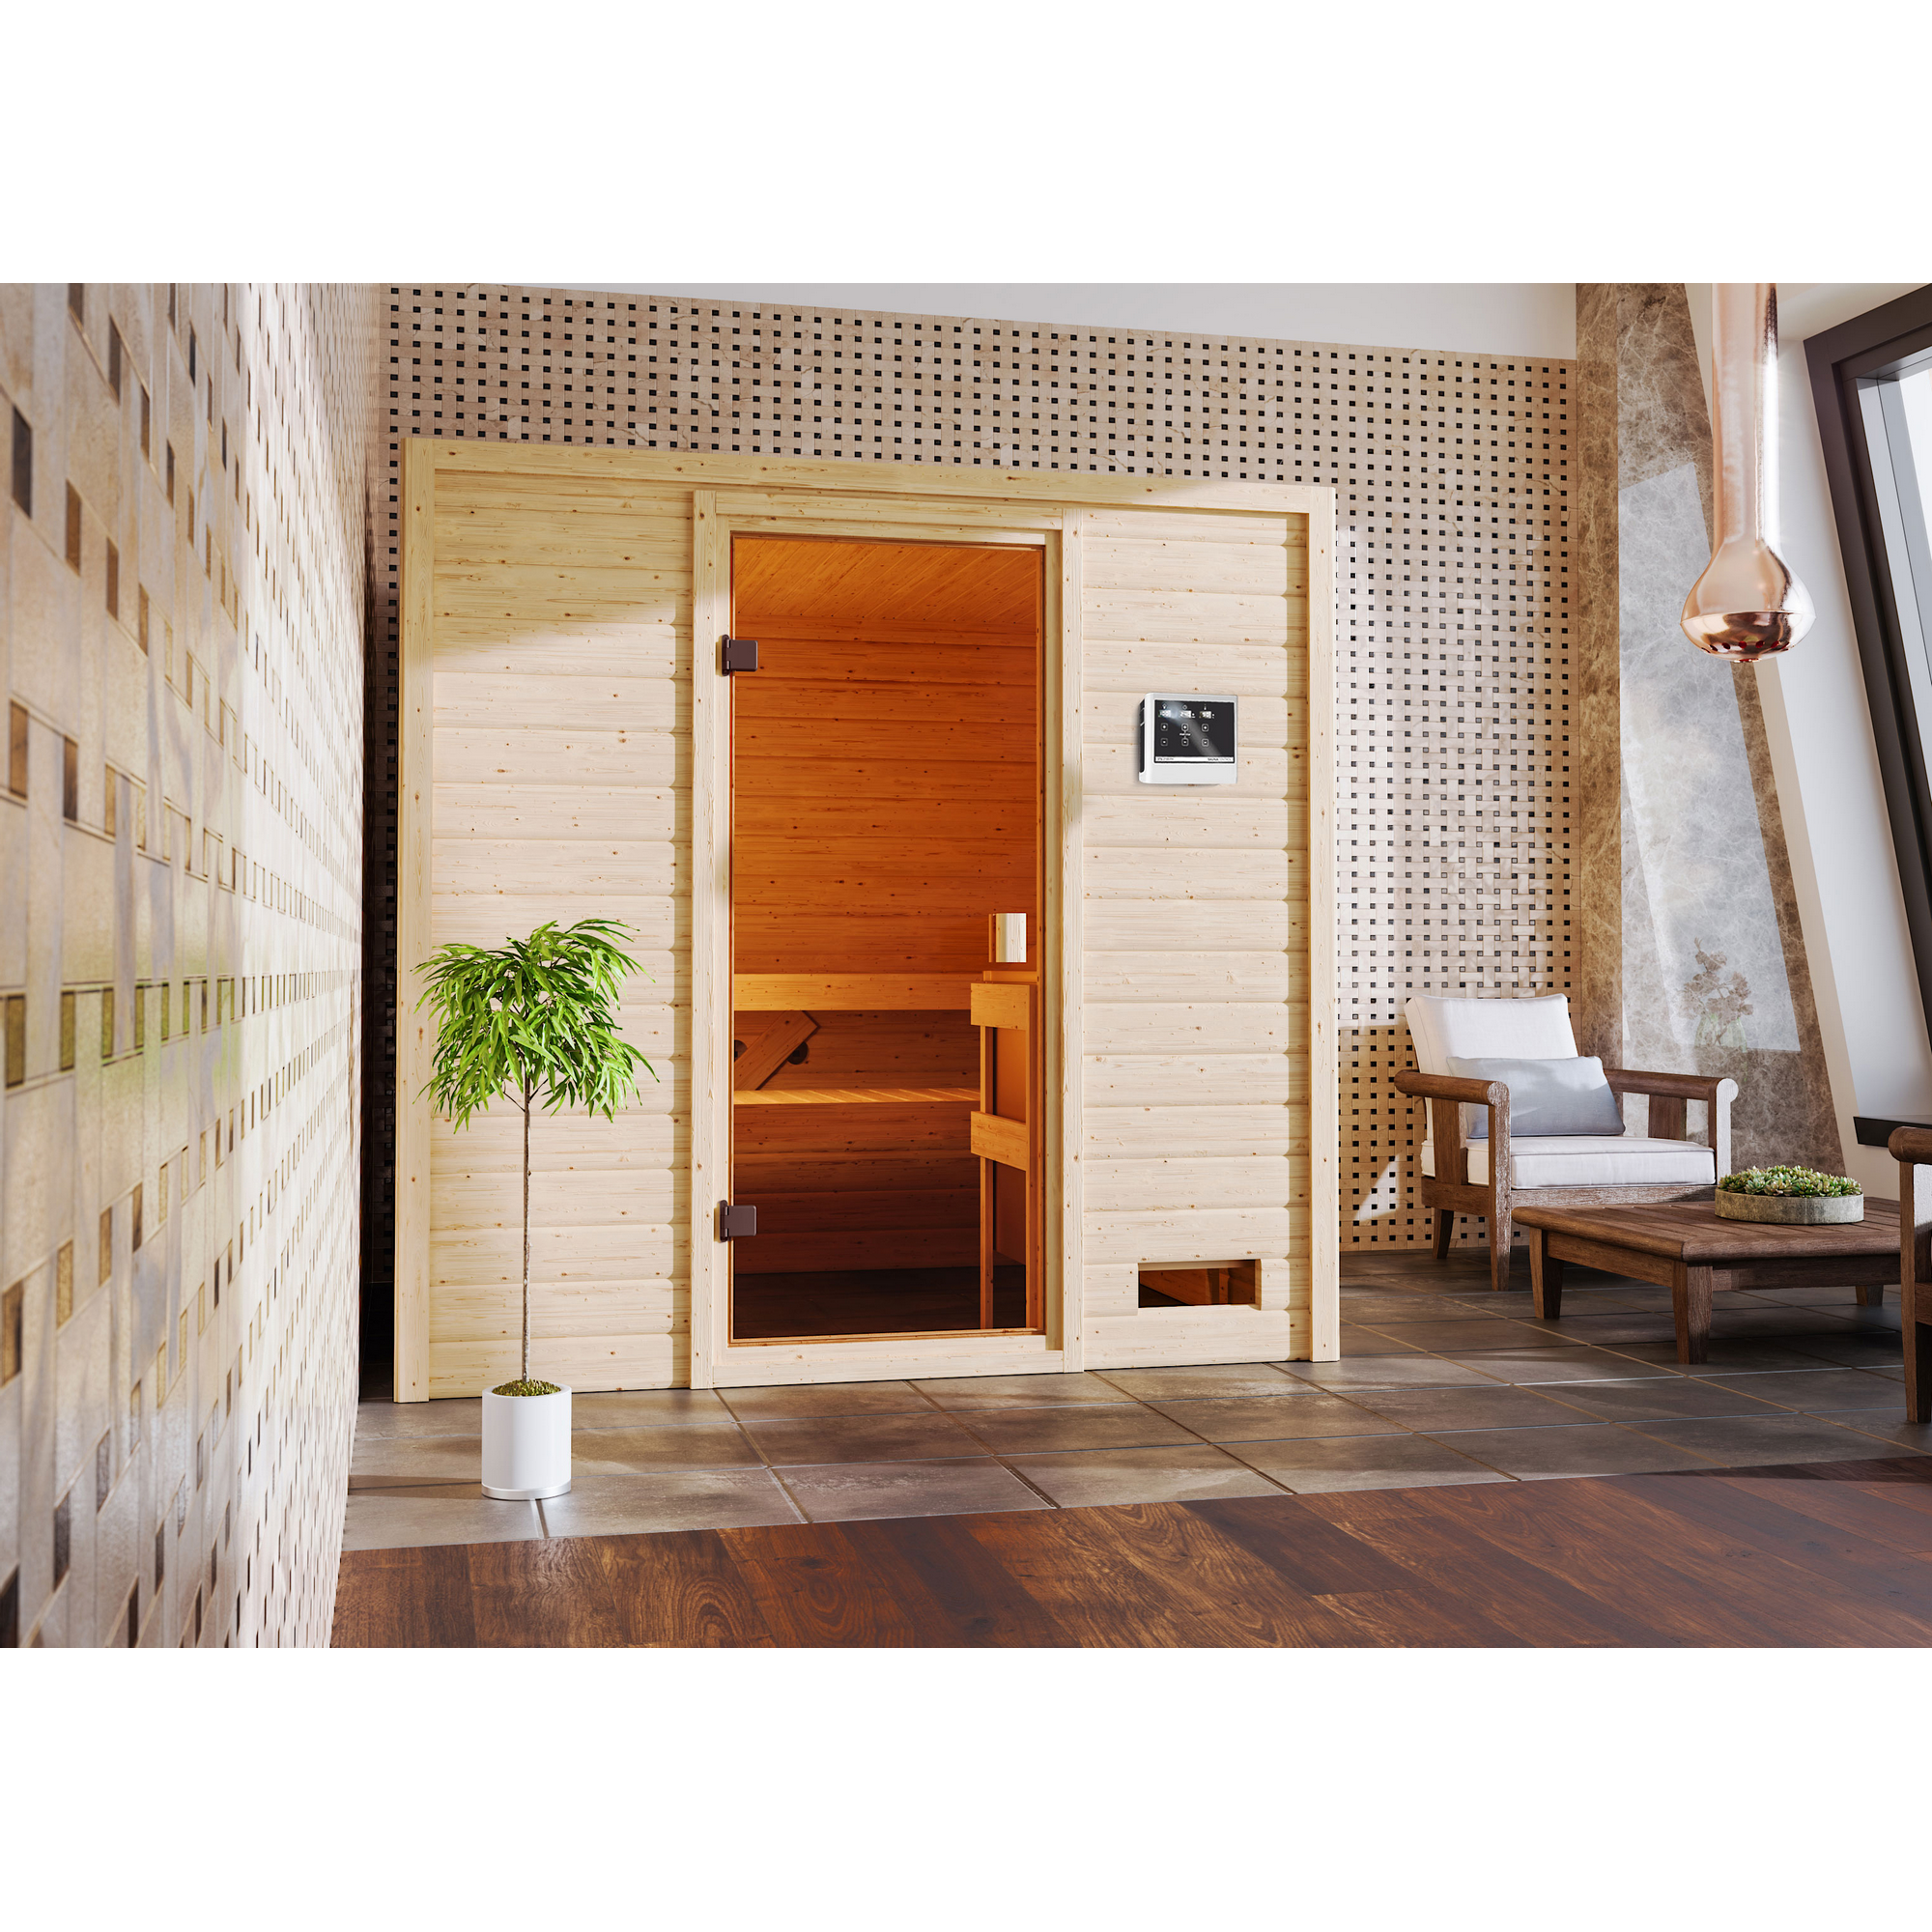 Massivholzsauna 'Donna' naturbelassen mit bronzierter Tür 9 kW Ofen externe Steuerung 195 x 169 x 187 cm + product picture